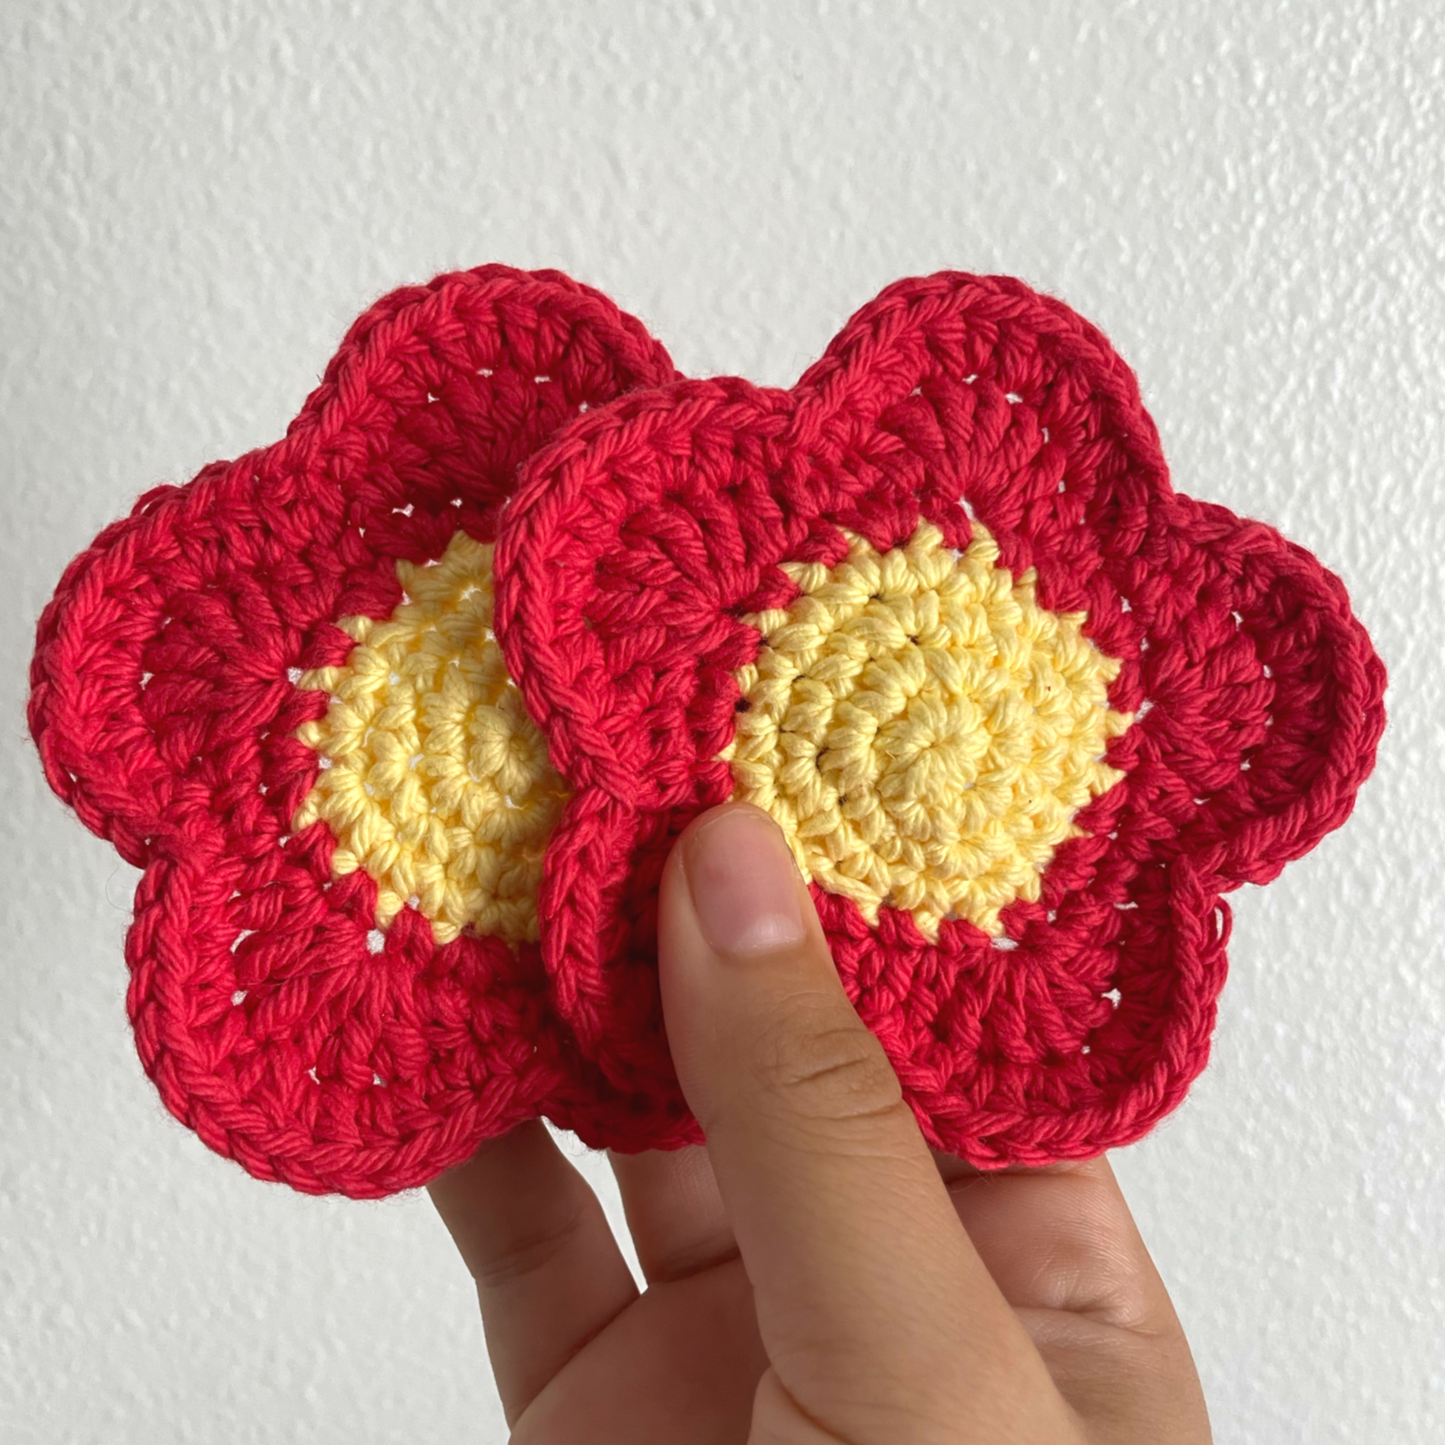 Crocheted Flower Mug Rug